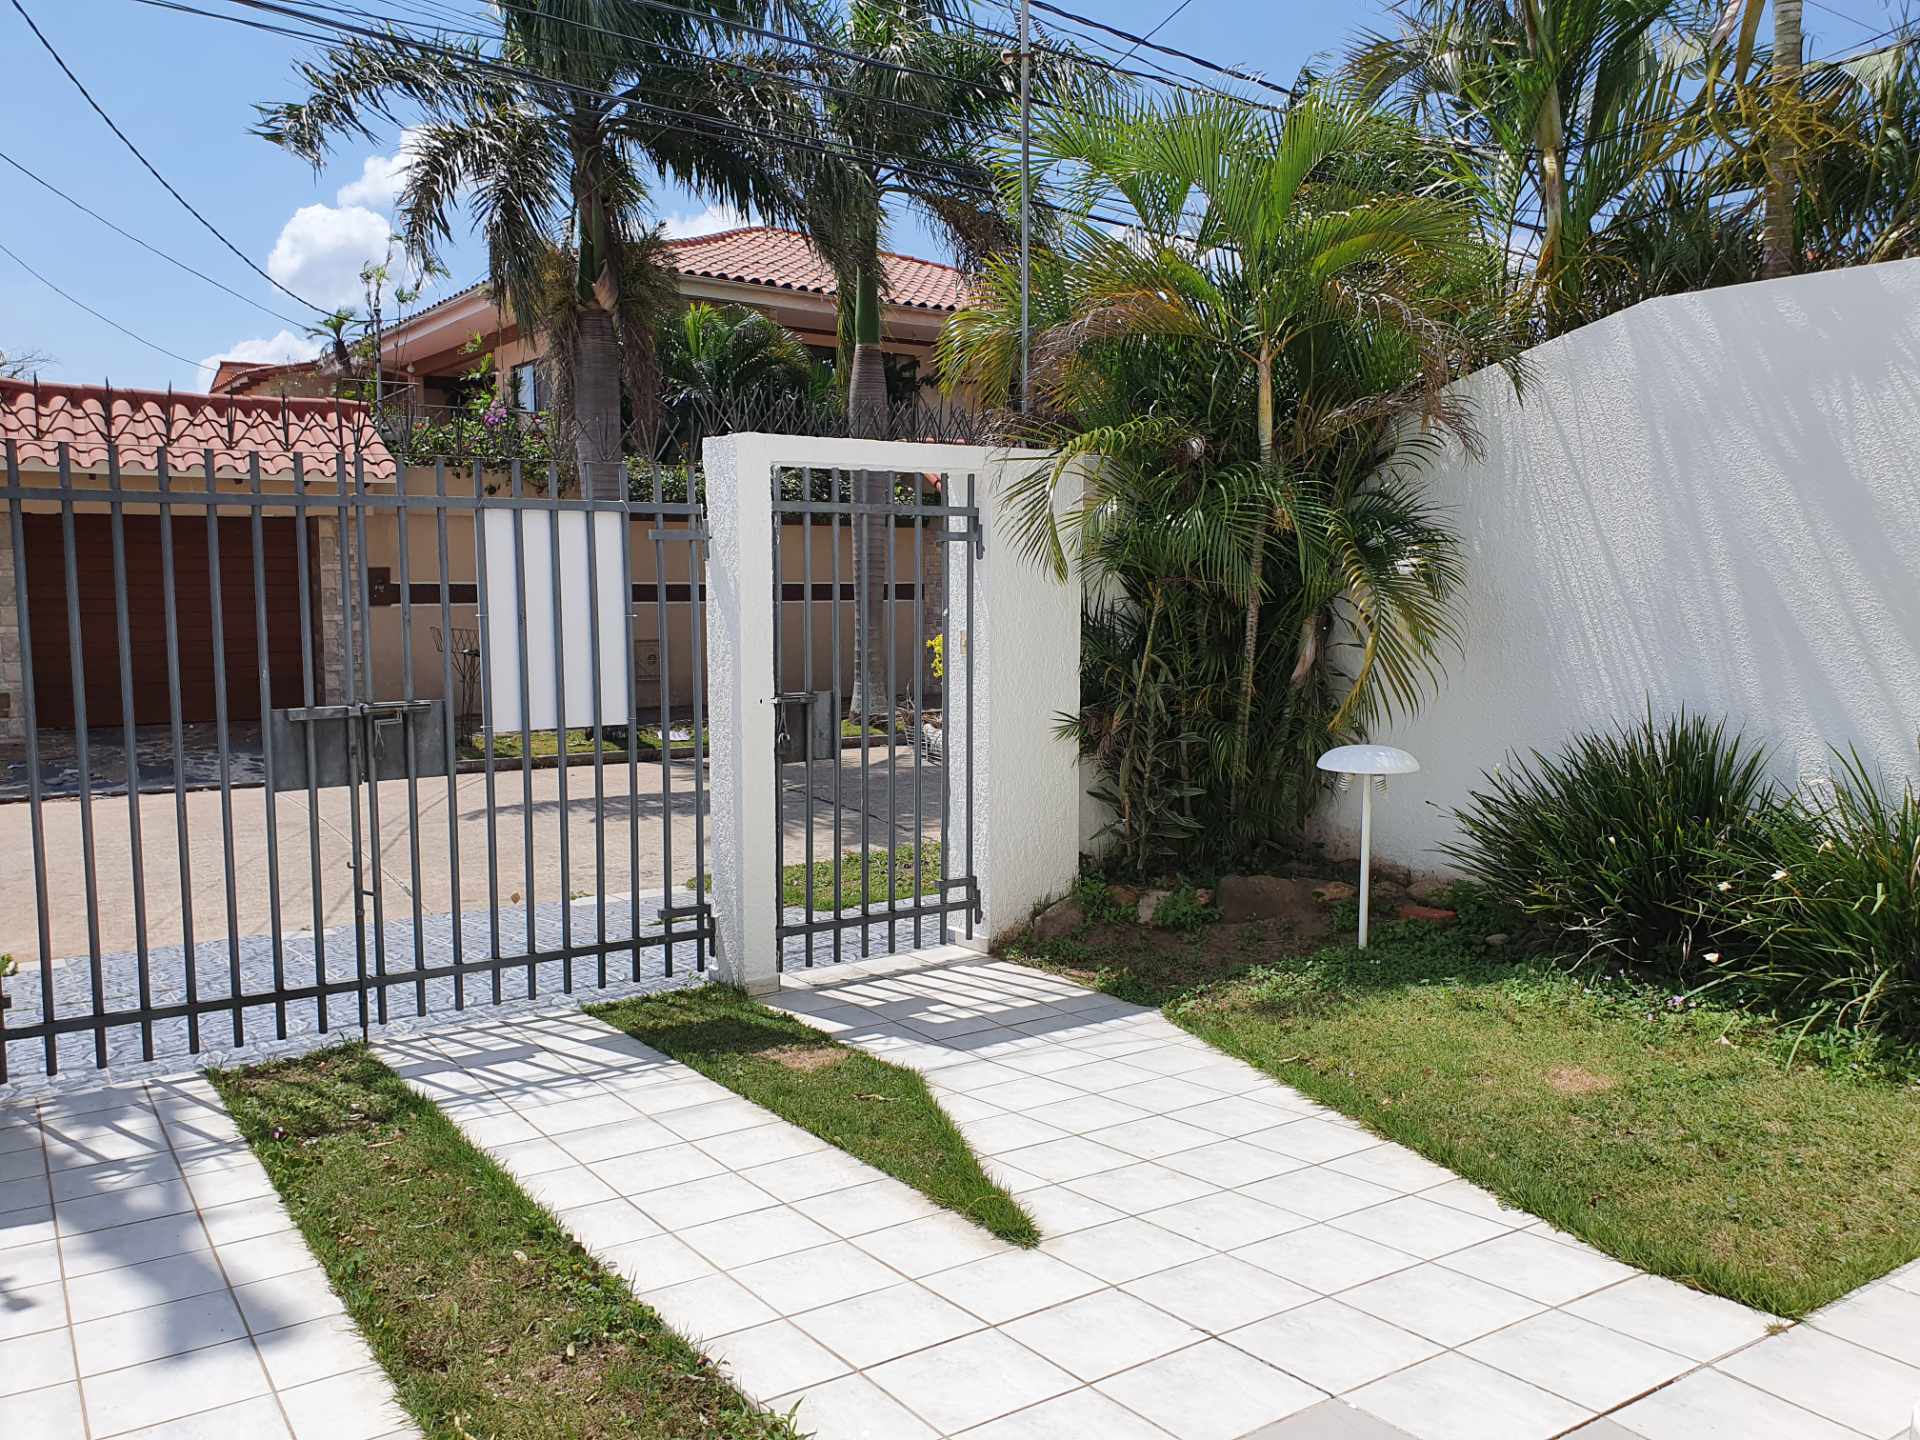 Casa en VentaZona Norte, en calle La Chonta a 1 cuadra y ½ de la Av. Alemana y 4 cuadras antes del 3er. anillo. Foto 2